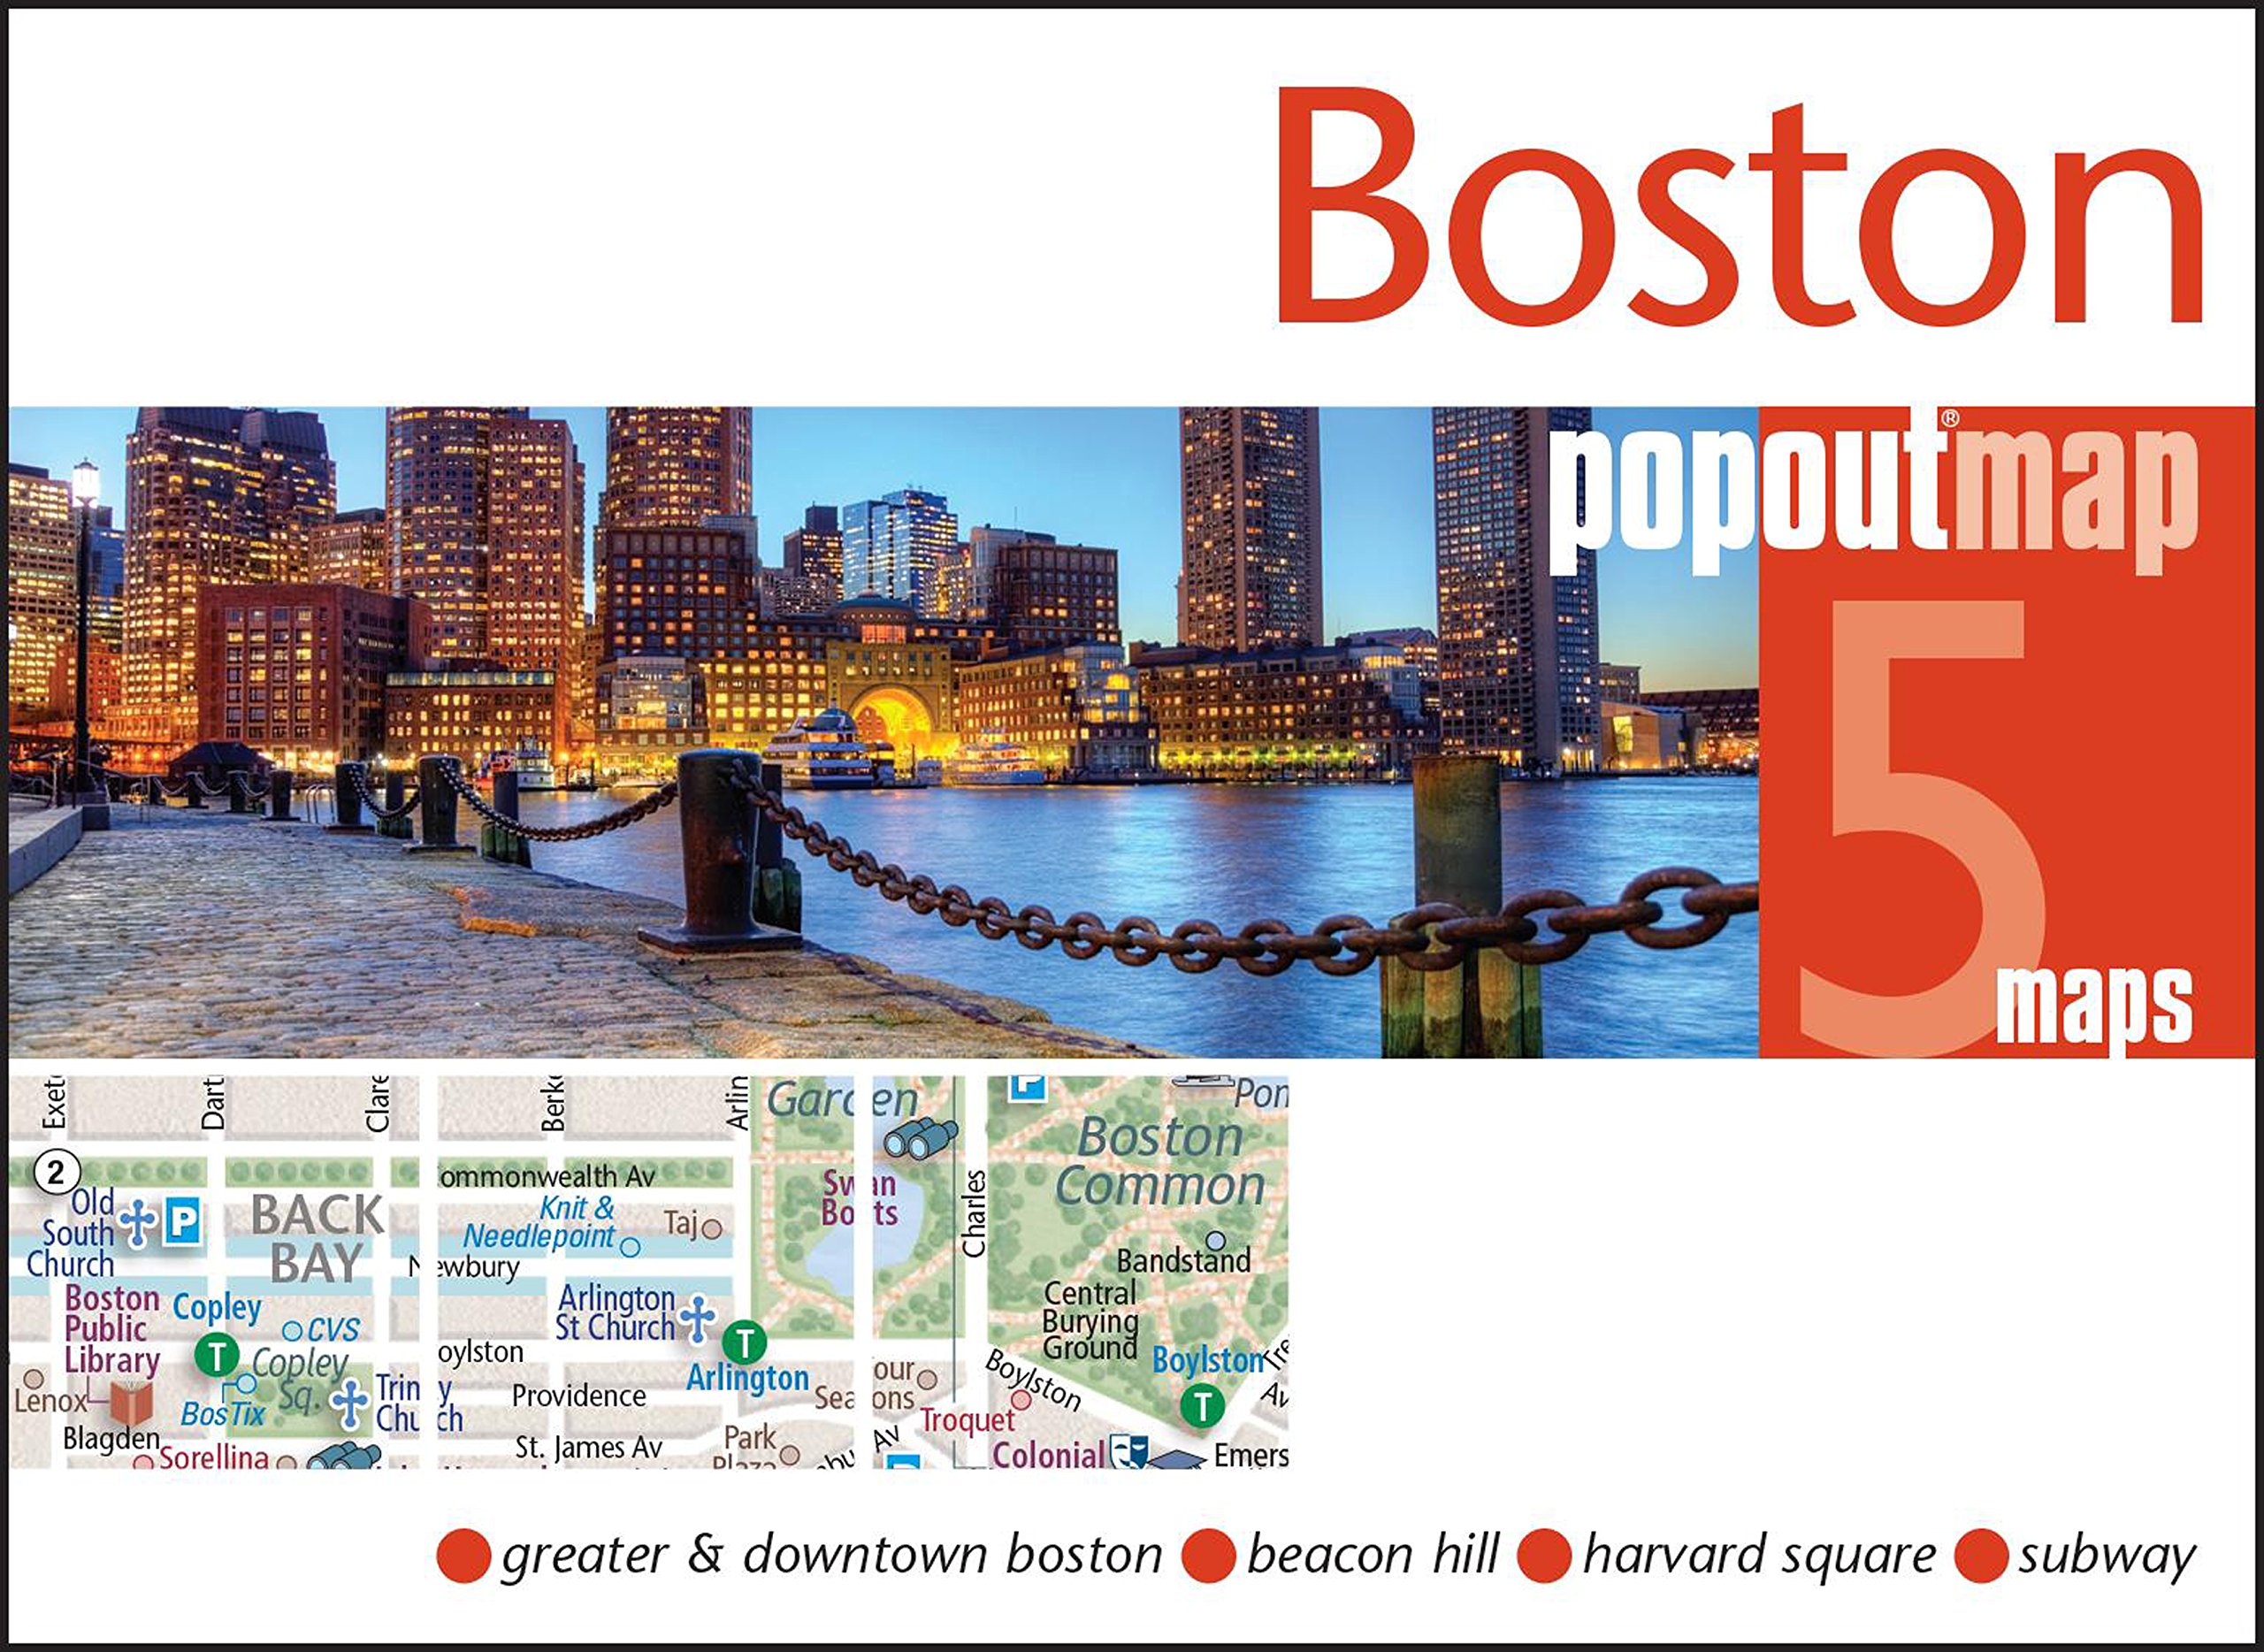 Boston popout map